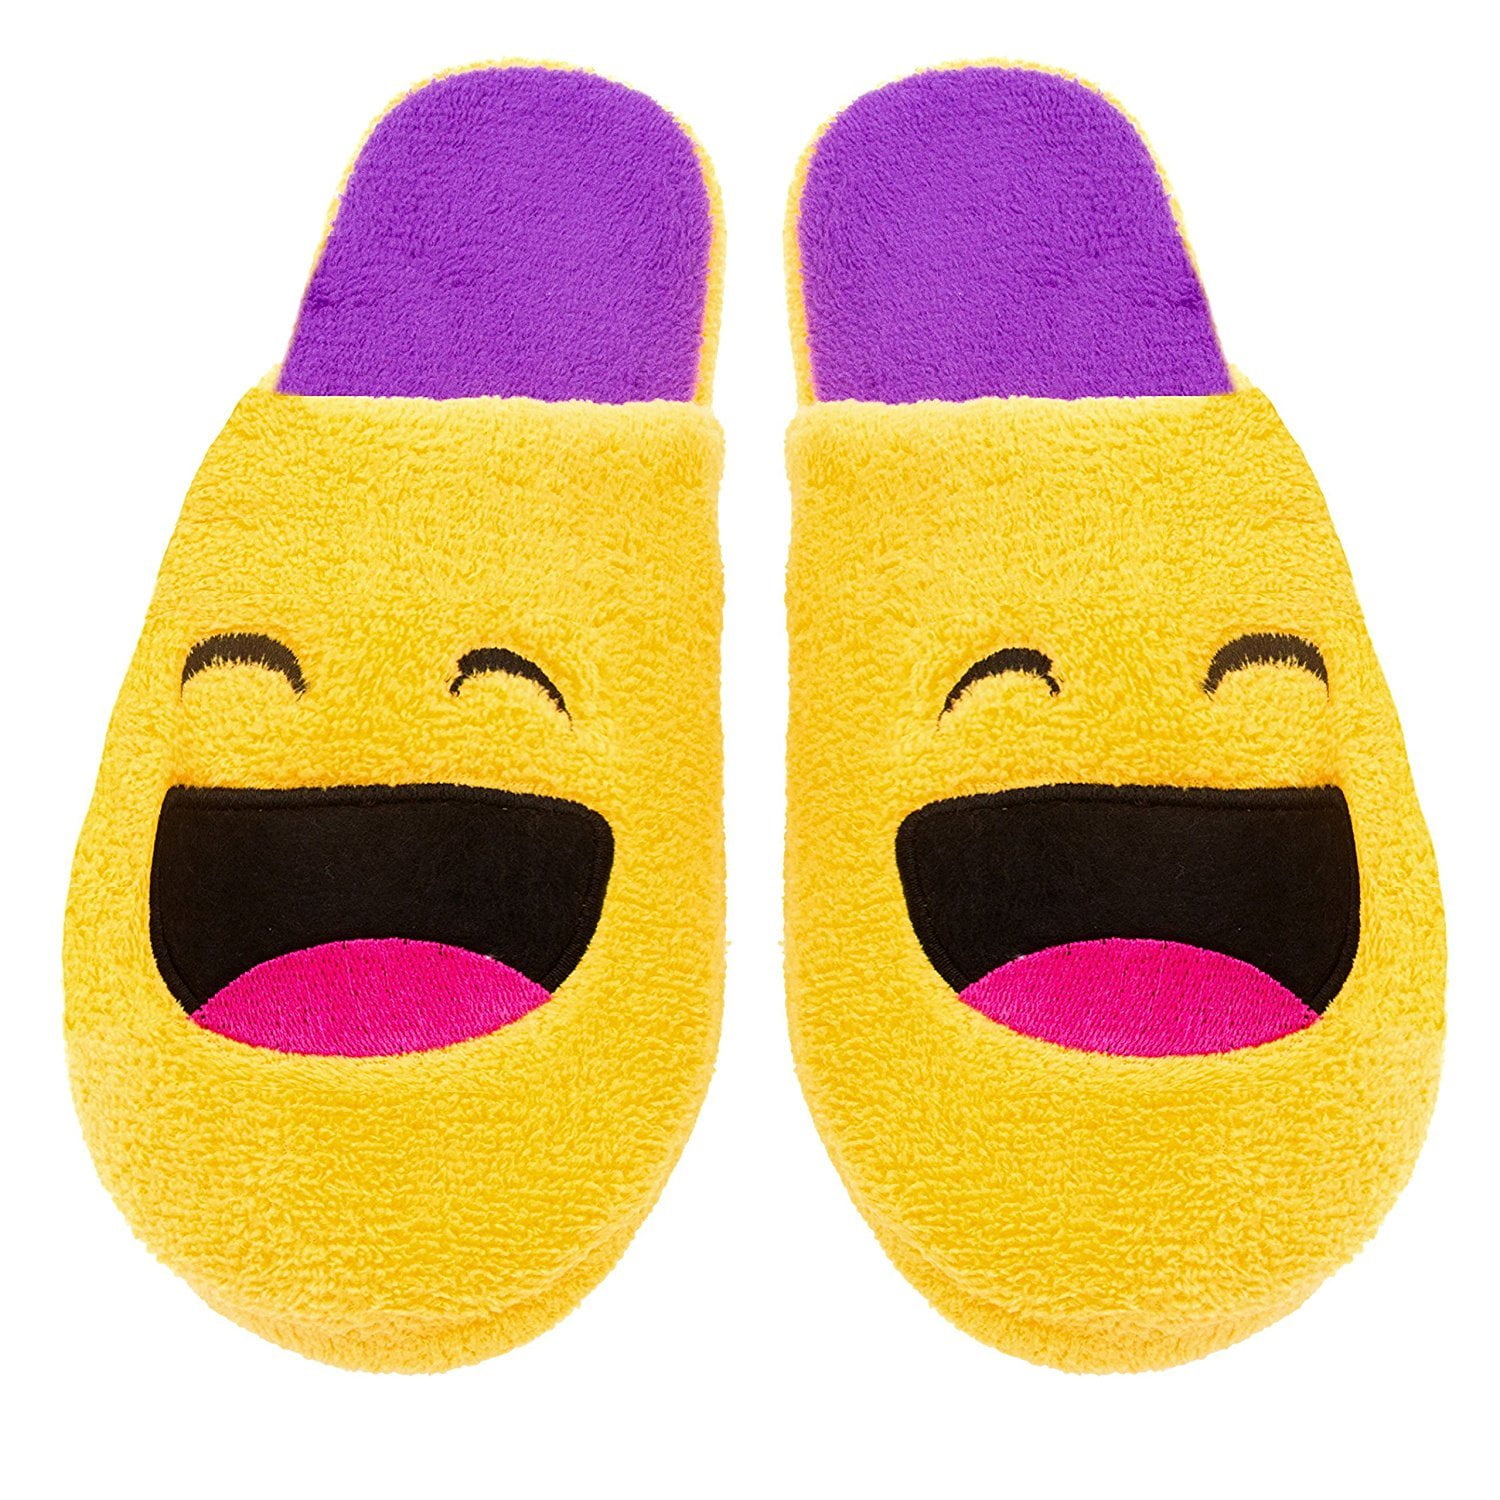 novelty bedroom slippers